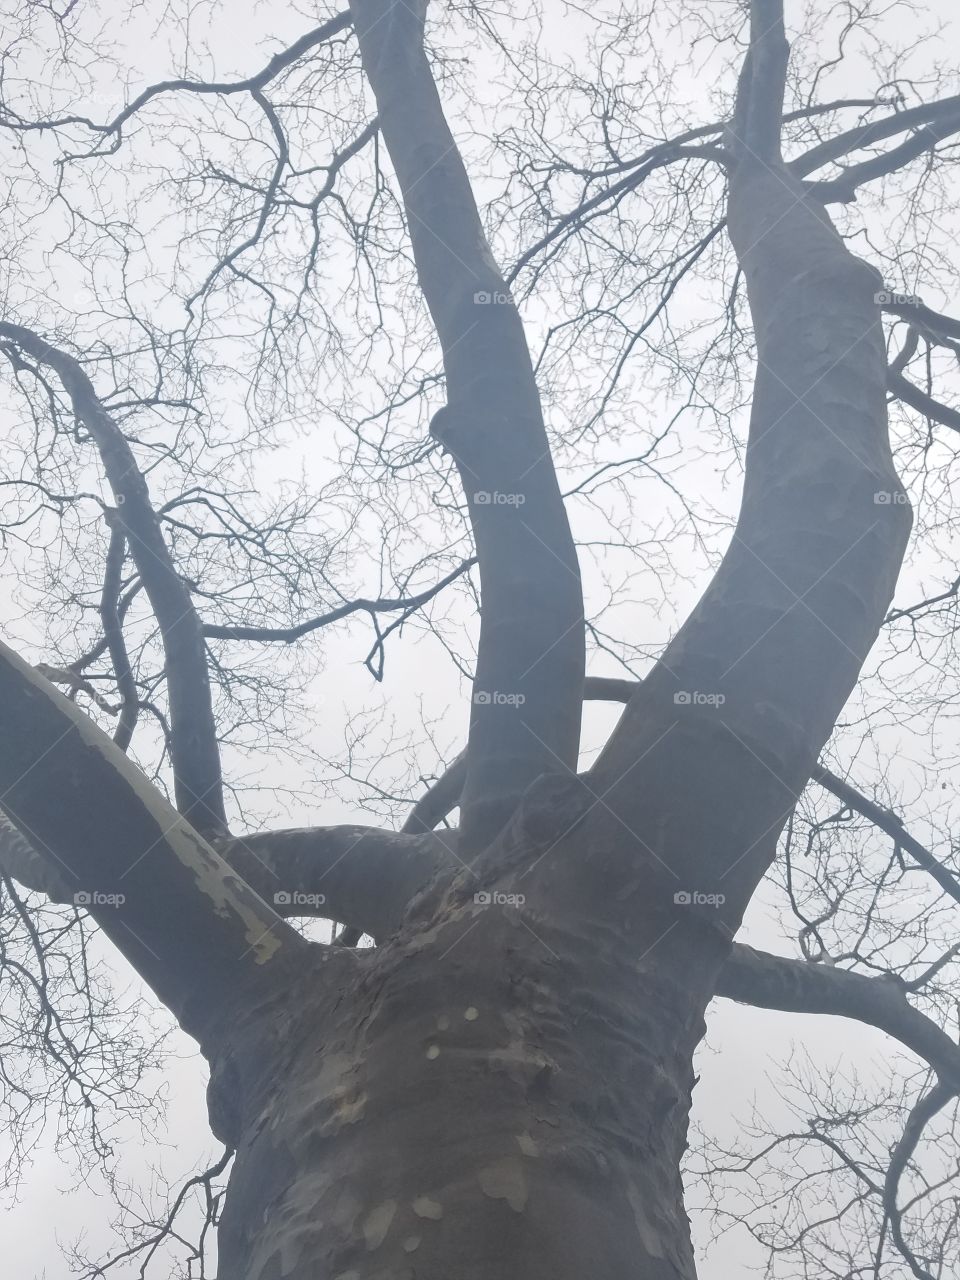 Trees in Bayside NY